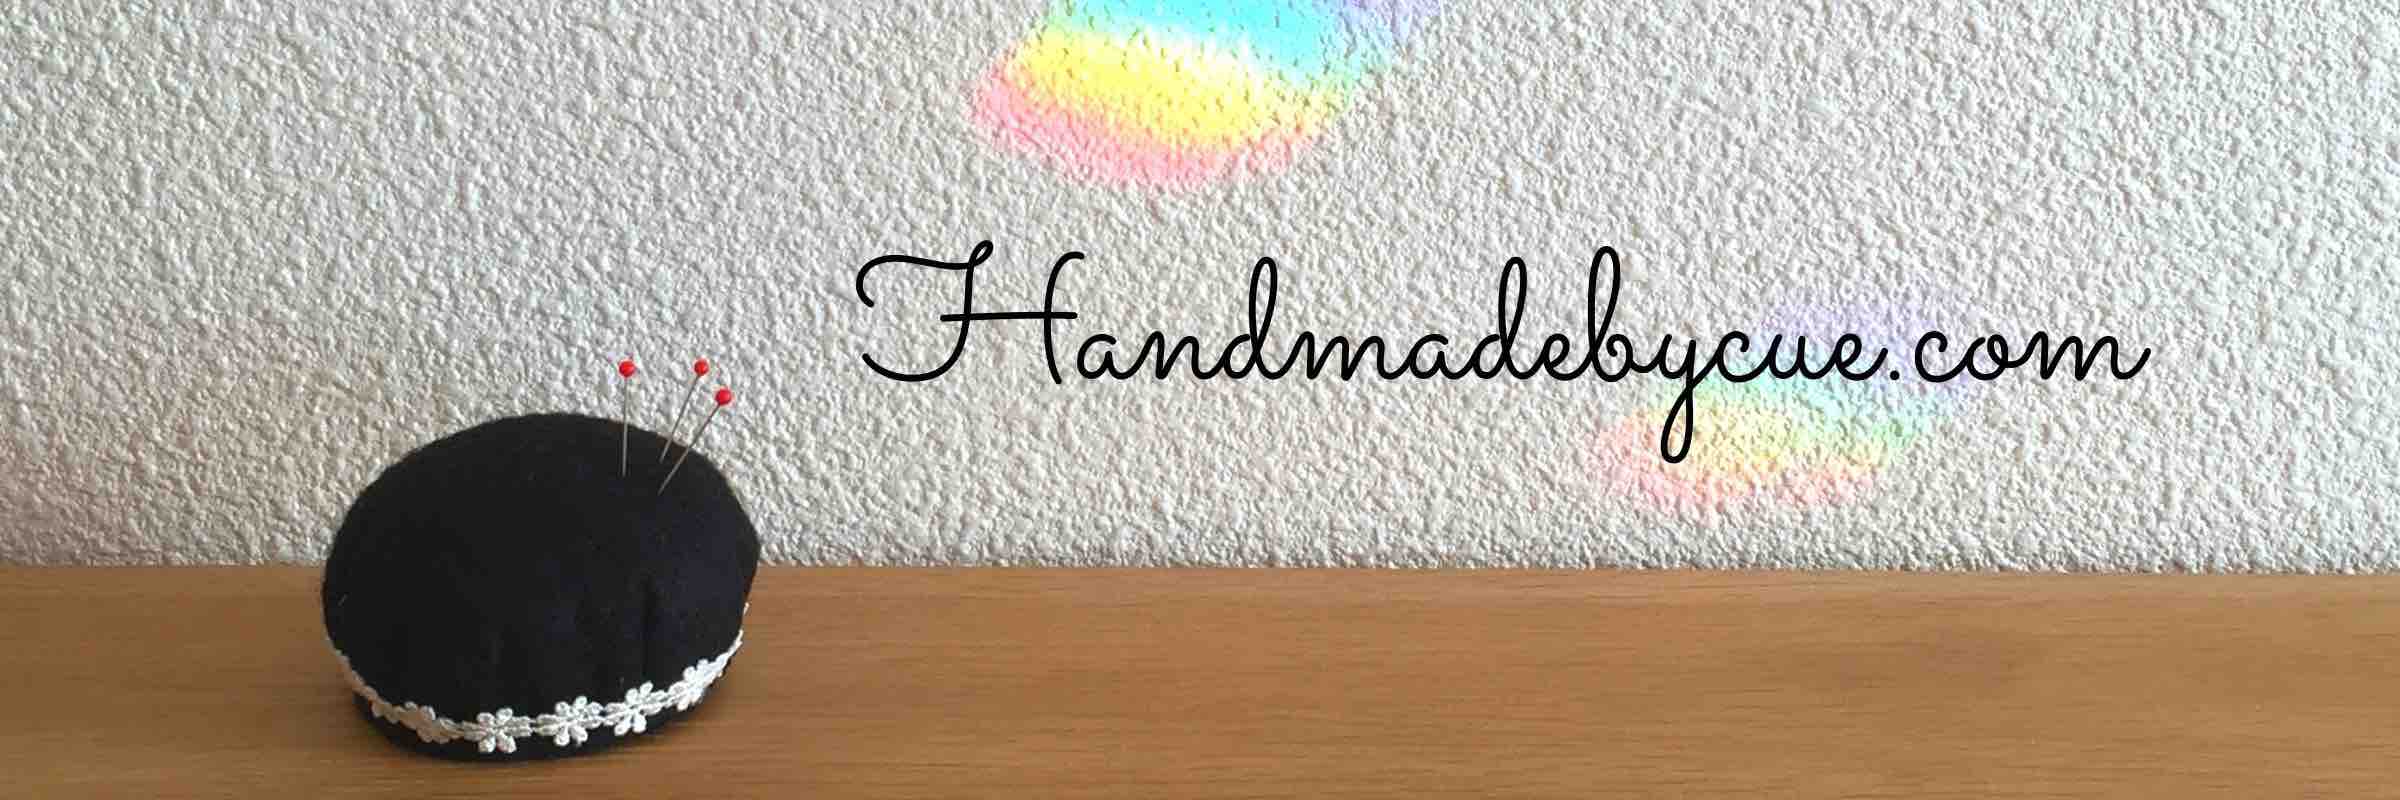 ハンドメイドで楽しく子育て Handmadebycue Com 入園入学の準備の手作り ハンドメイド や子育てに役立つブログです